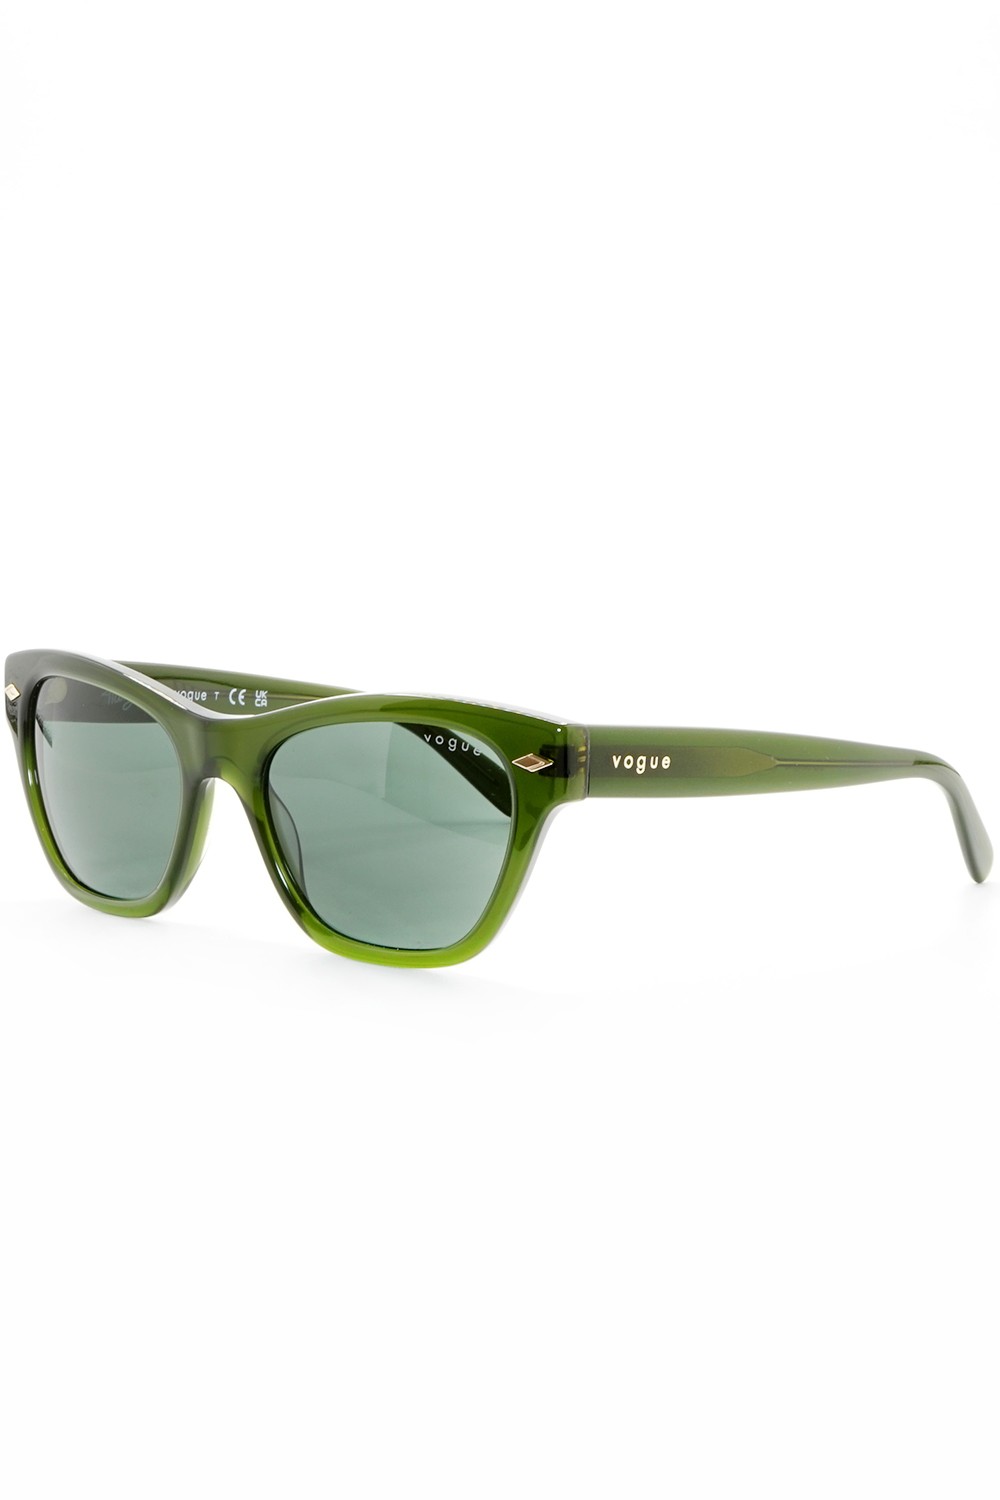 Vogue - Occhiali da sole in celluloide cat eye per donna verde - VO5445S 300371